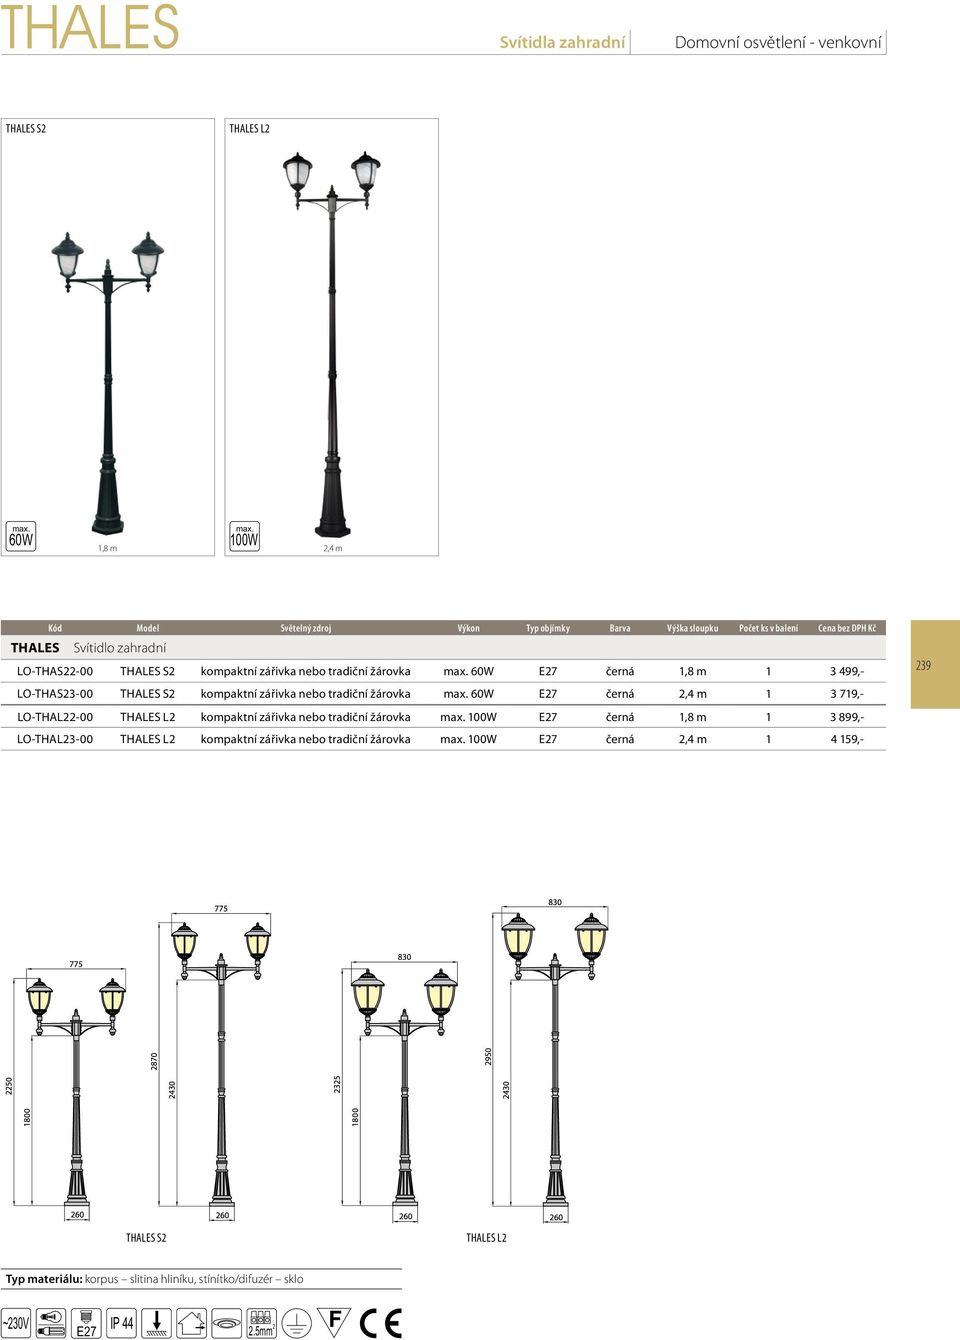 THALES S2 kompaktní zářivka nebo tradiční žárovka černá 2,4 m 1 3 719,- LO-THAL22-00 THALES L2 kompaktní zářivka nebo tradiční